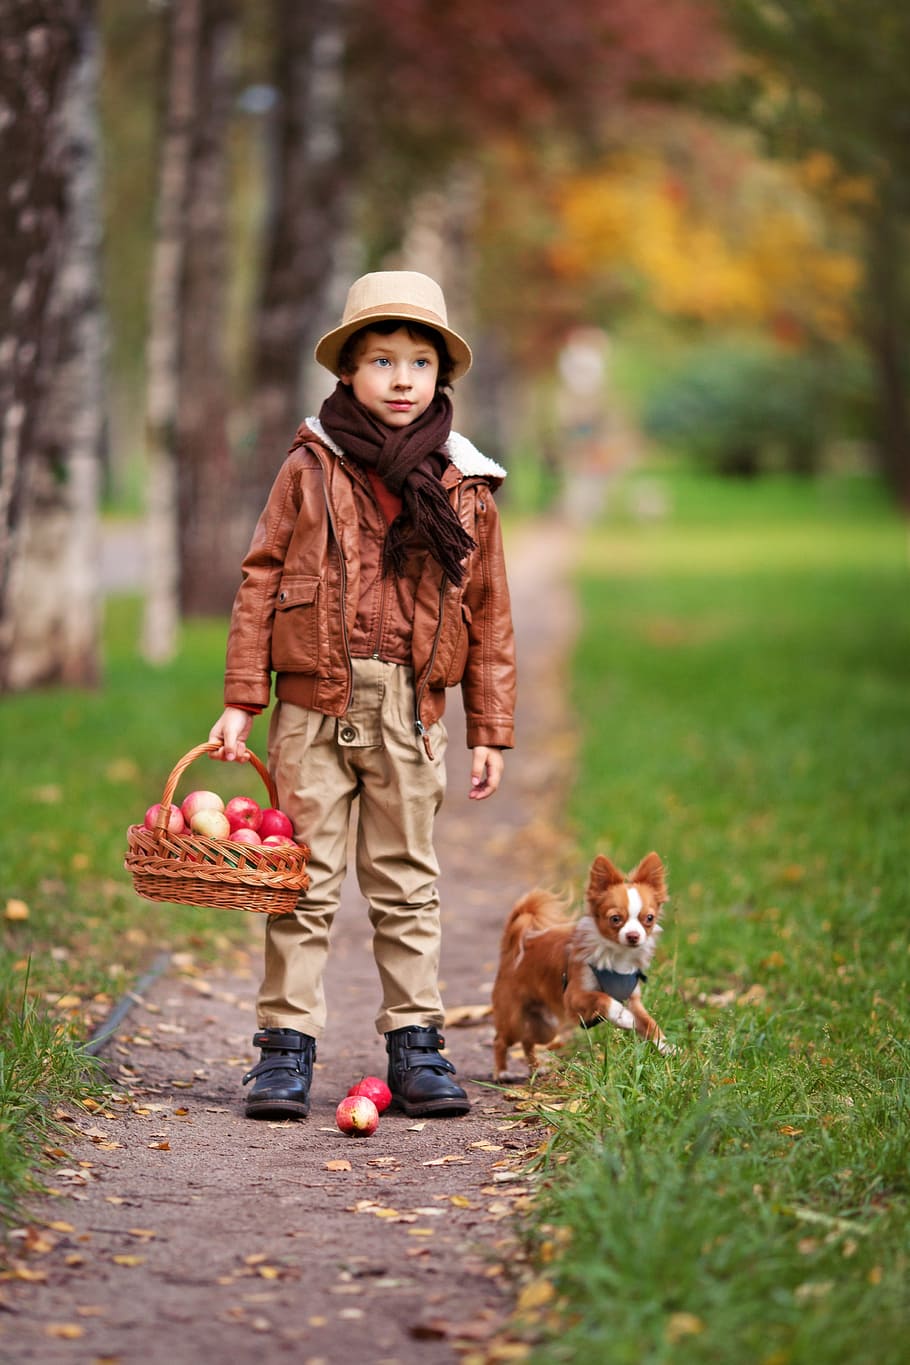 少年, 茶色, 革のジャケット, 立っている, 横, 犬, 経路, 森林, ペット, 小さな犬と少年